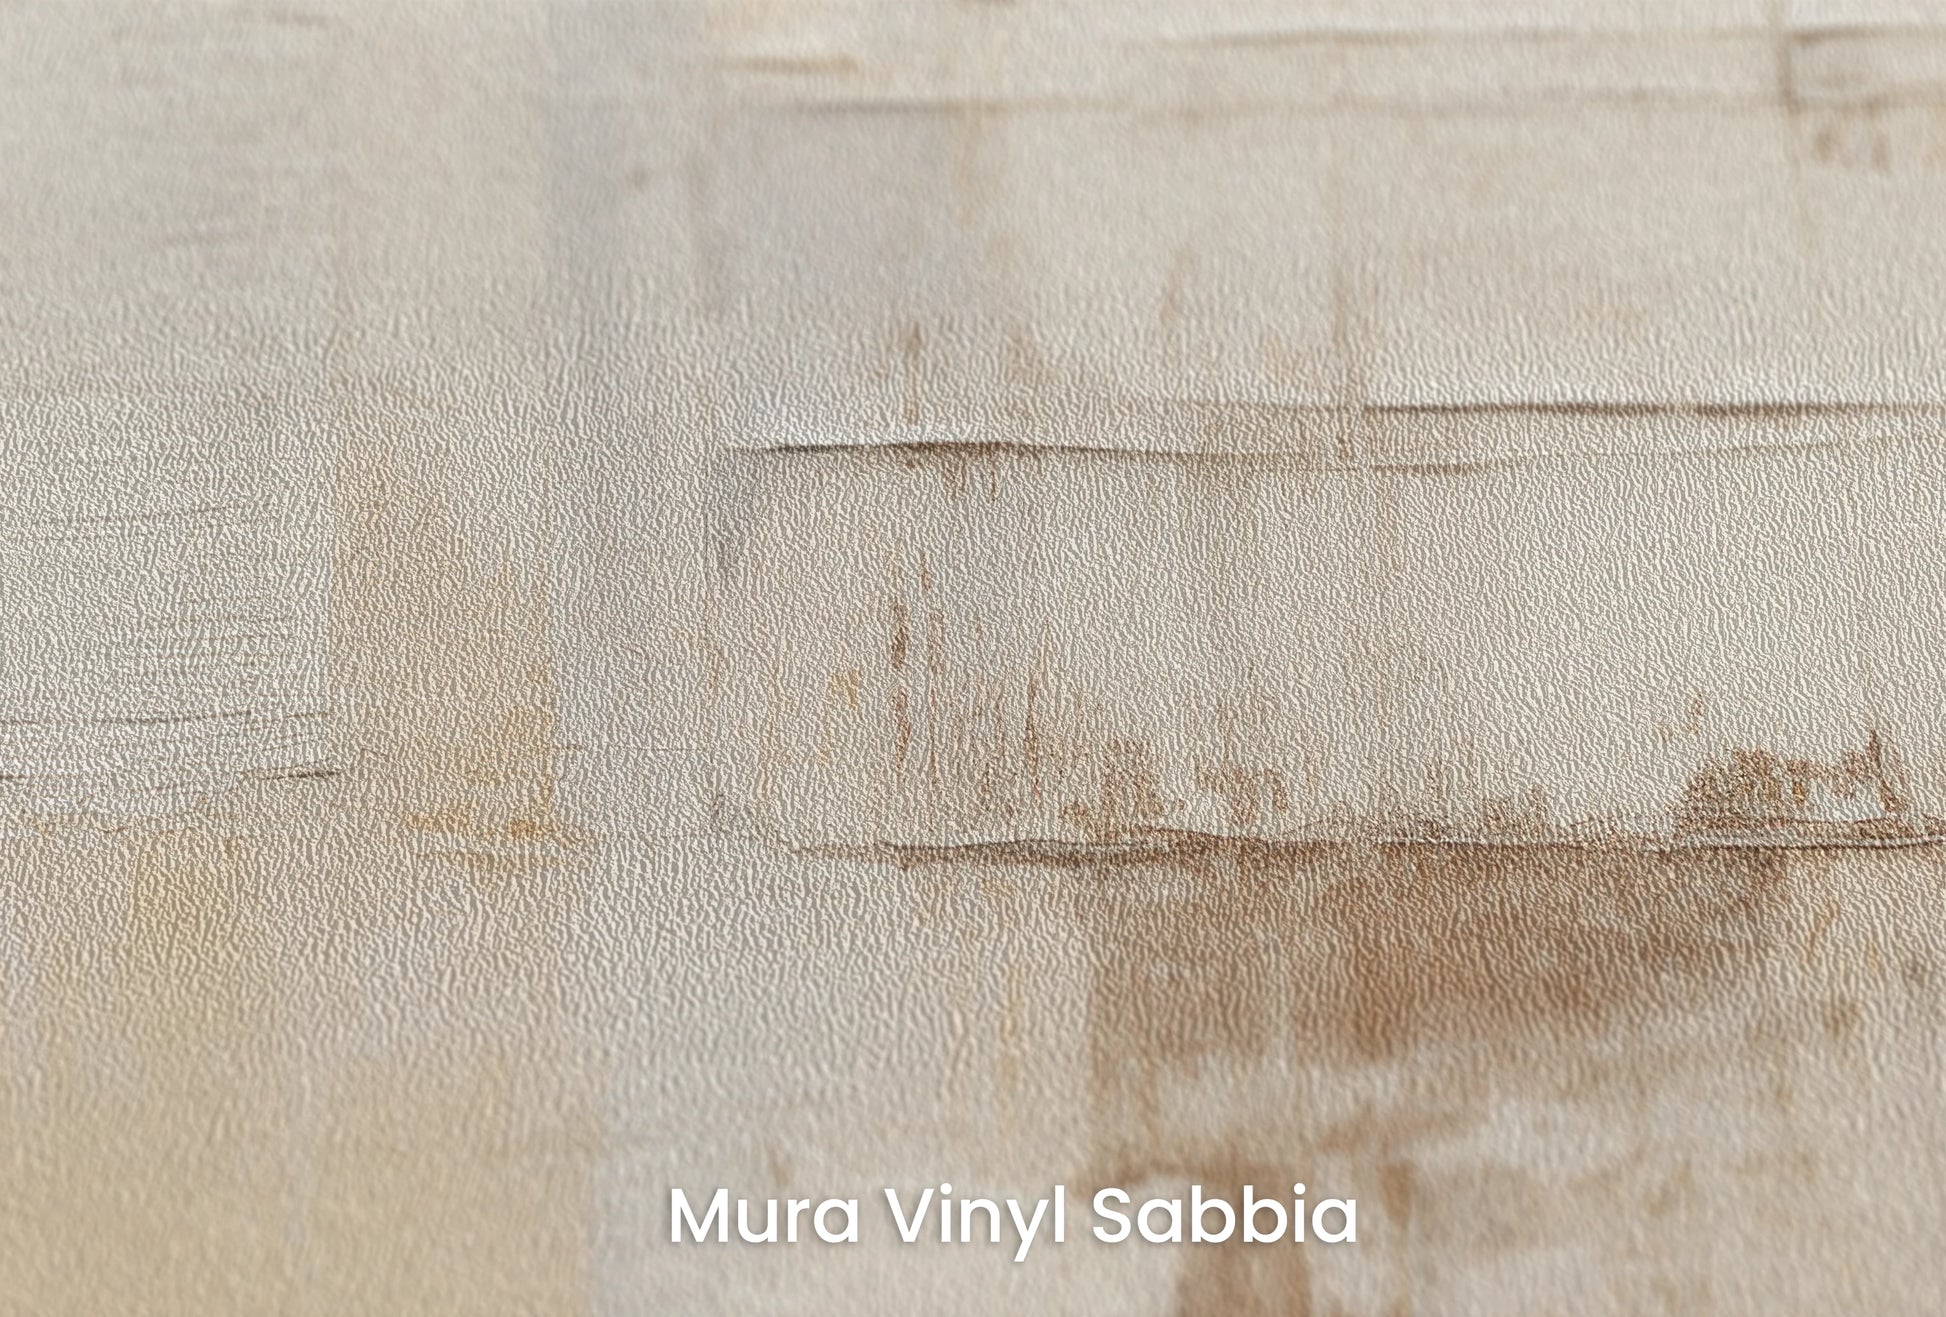 Zbliżenie na artystyczną fototapetę o nazwie Parchment Hues na podłożu Mura Vinyl Sabbia struktura grubego ziarna piasku.